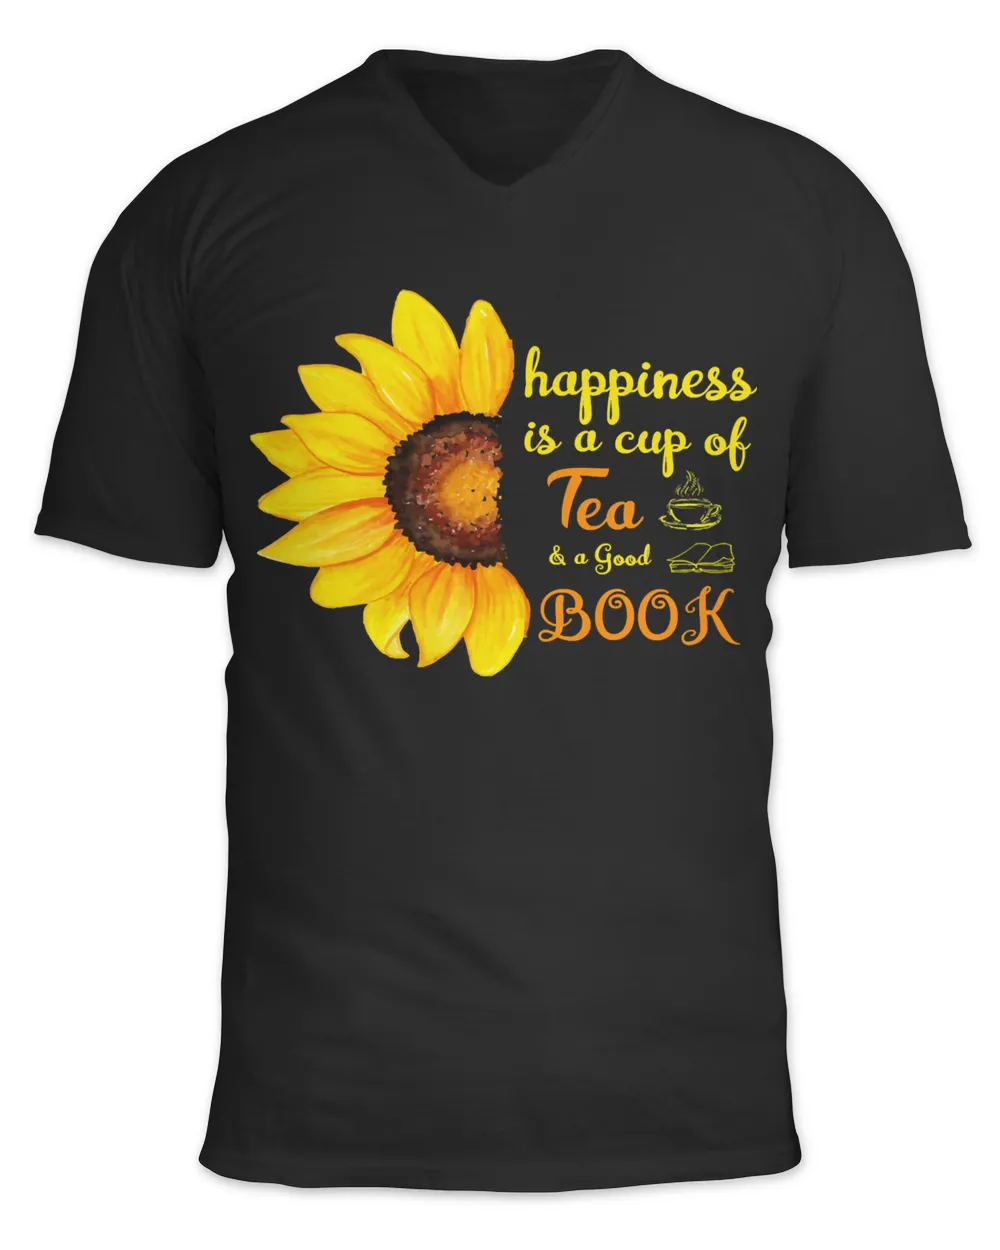 Book Reader Nerd Tea Lover Tee Reader Sayings Girls Love Books Gift 296 booked Books Reading Fan